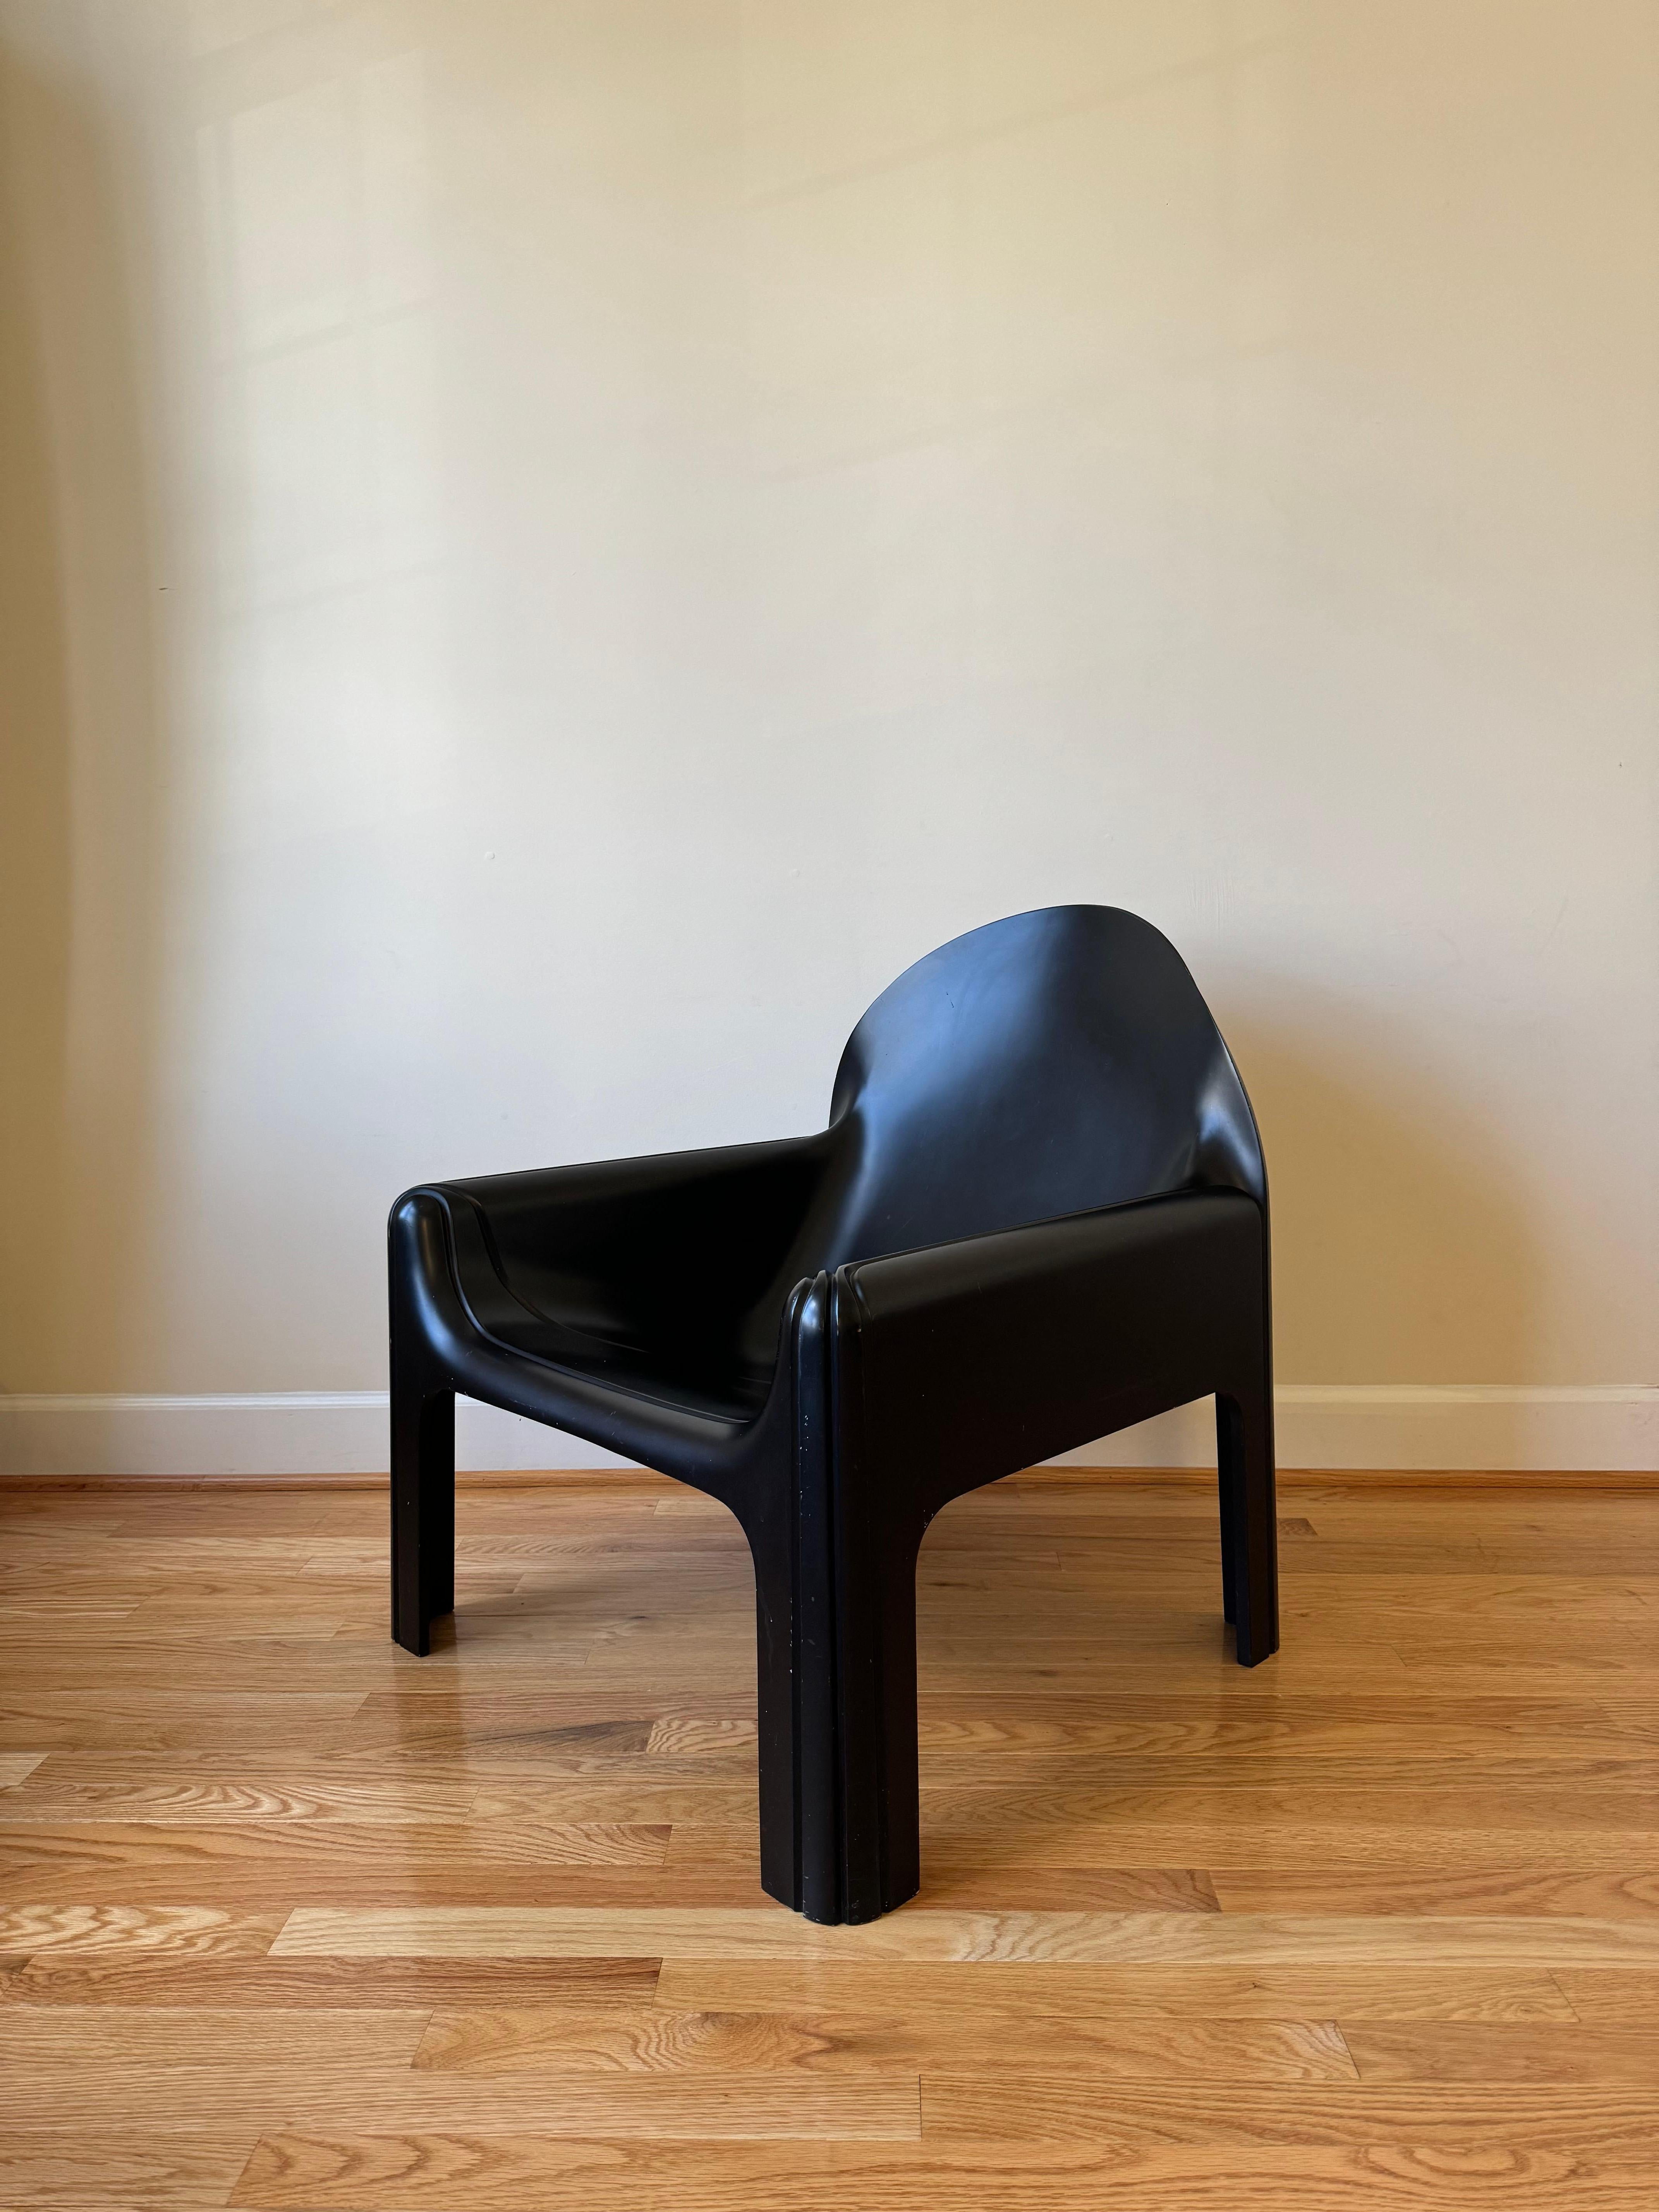 La série iconique Gae Aulenti Kartell, présentée pour la première fois en 1974, marque une étape importante dans l'histoire du design de meubles. Cette série, qui comprend une table (modèle 4894), un fauteuil (modèle 4794) et une chaise de salle à